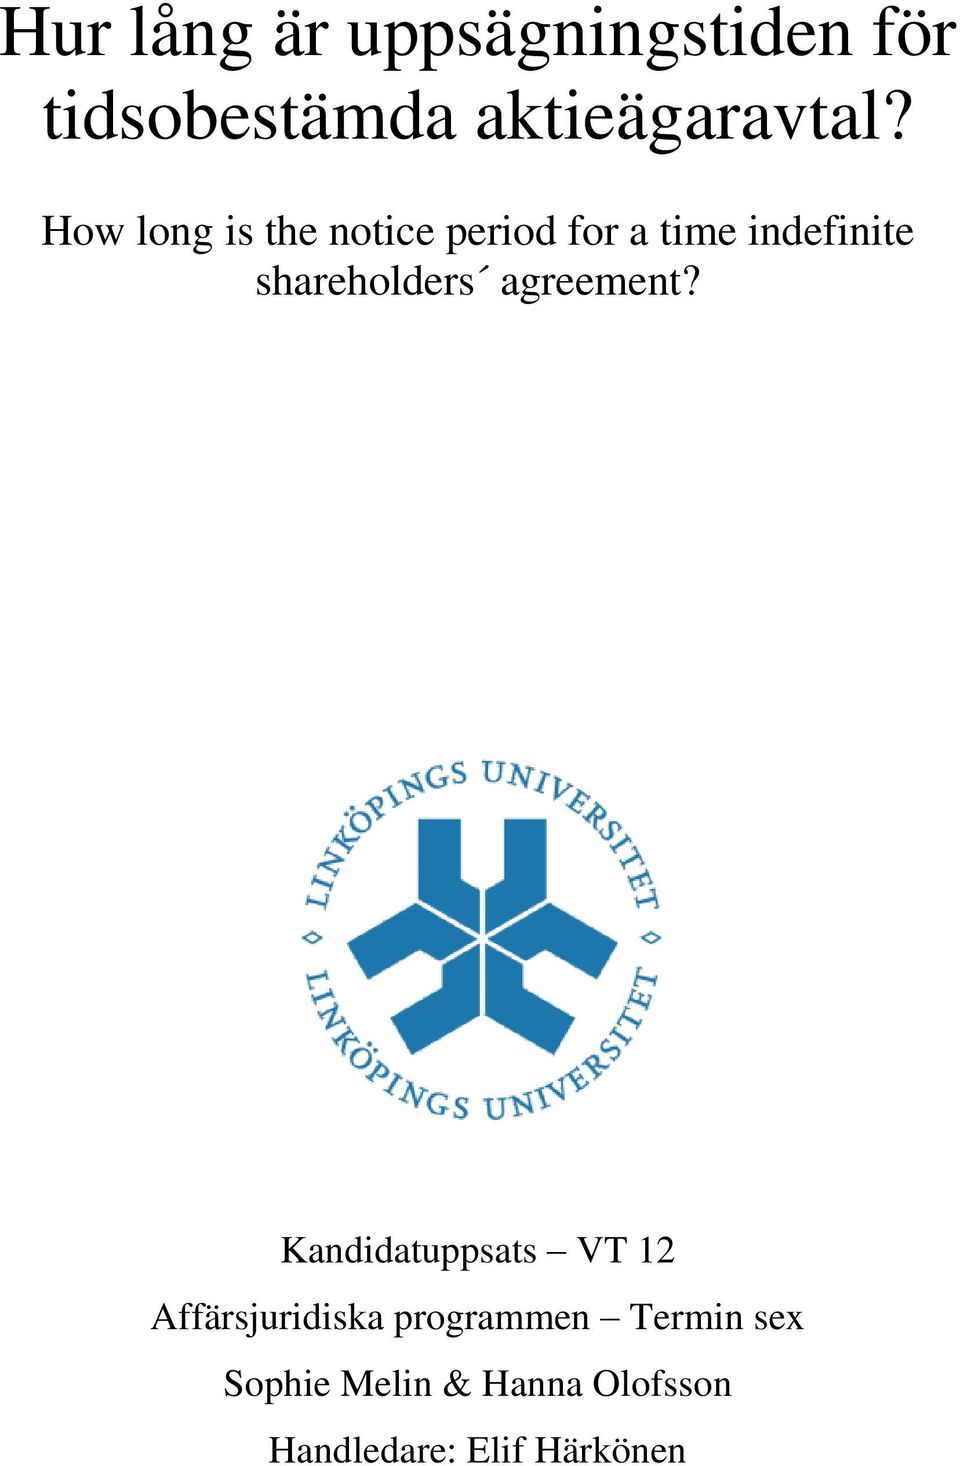 shareholders agreement?